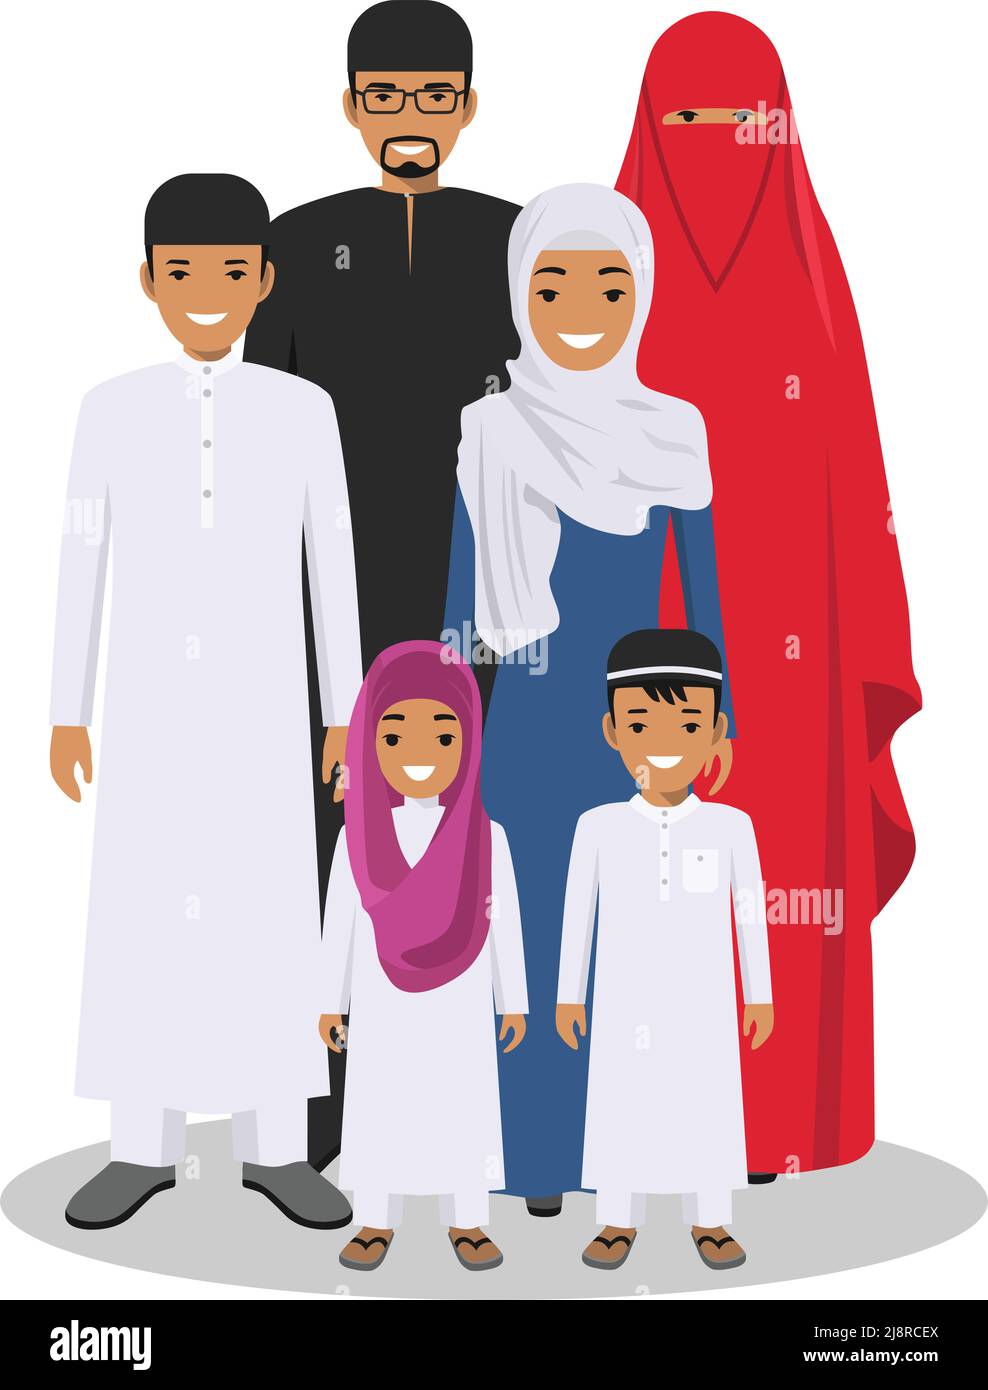 Alle Altersgruppen der arabischen Männerfamilie. Generationen Mensch. Araber, Vater, Mutter, Sohn und Tochter, stehen in traditionellen islamischen Kleidern zusammen. Soc Stock Vektor